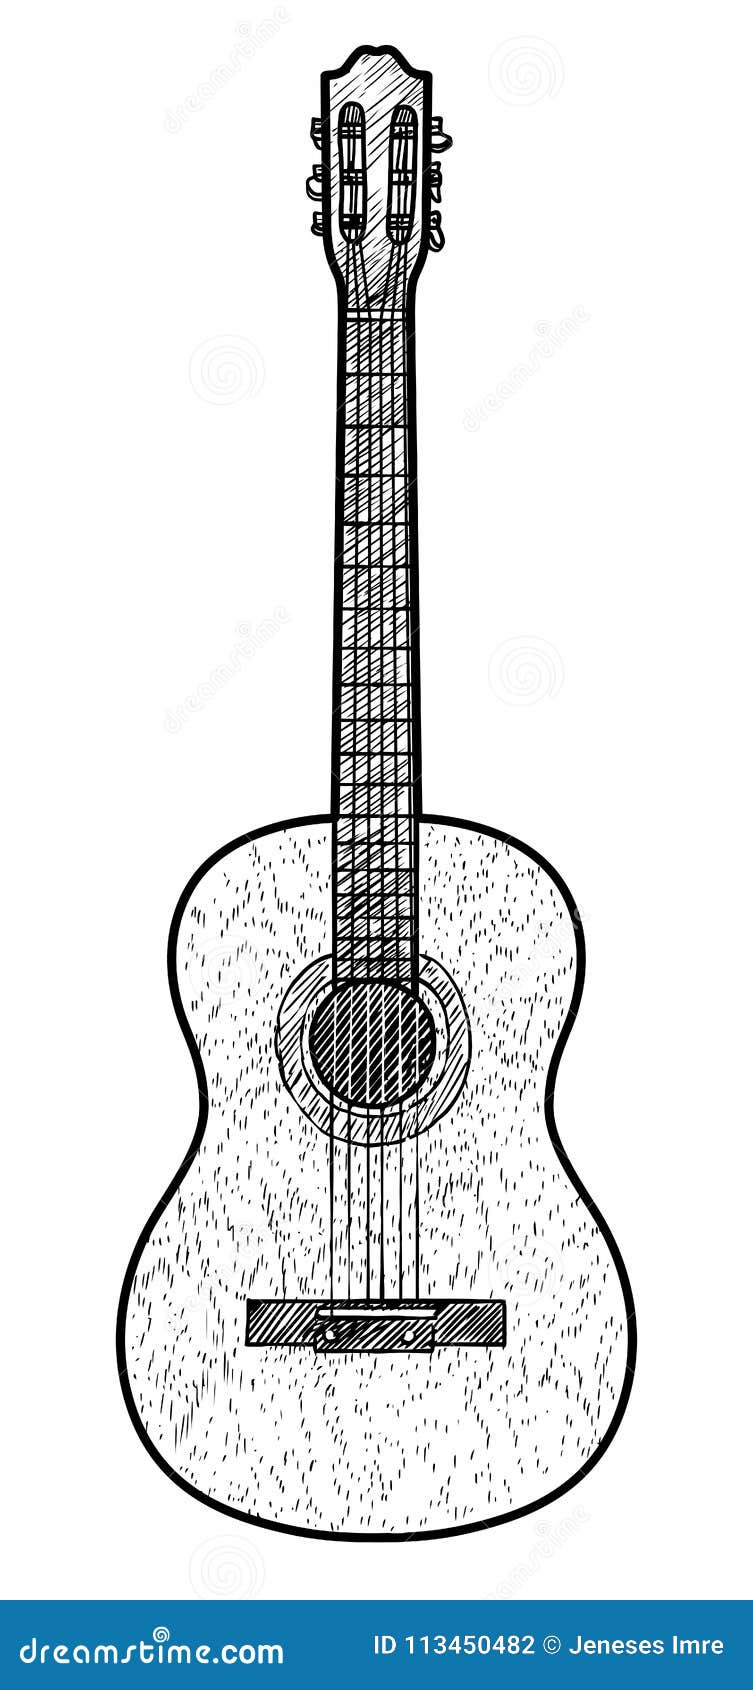 dibujos de guitarras